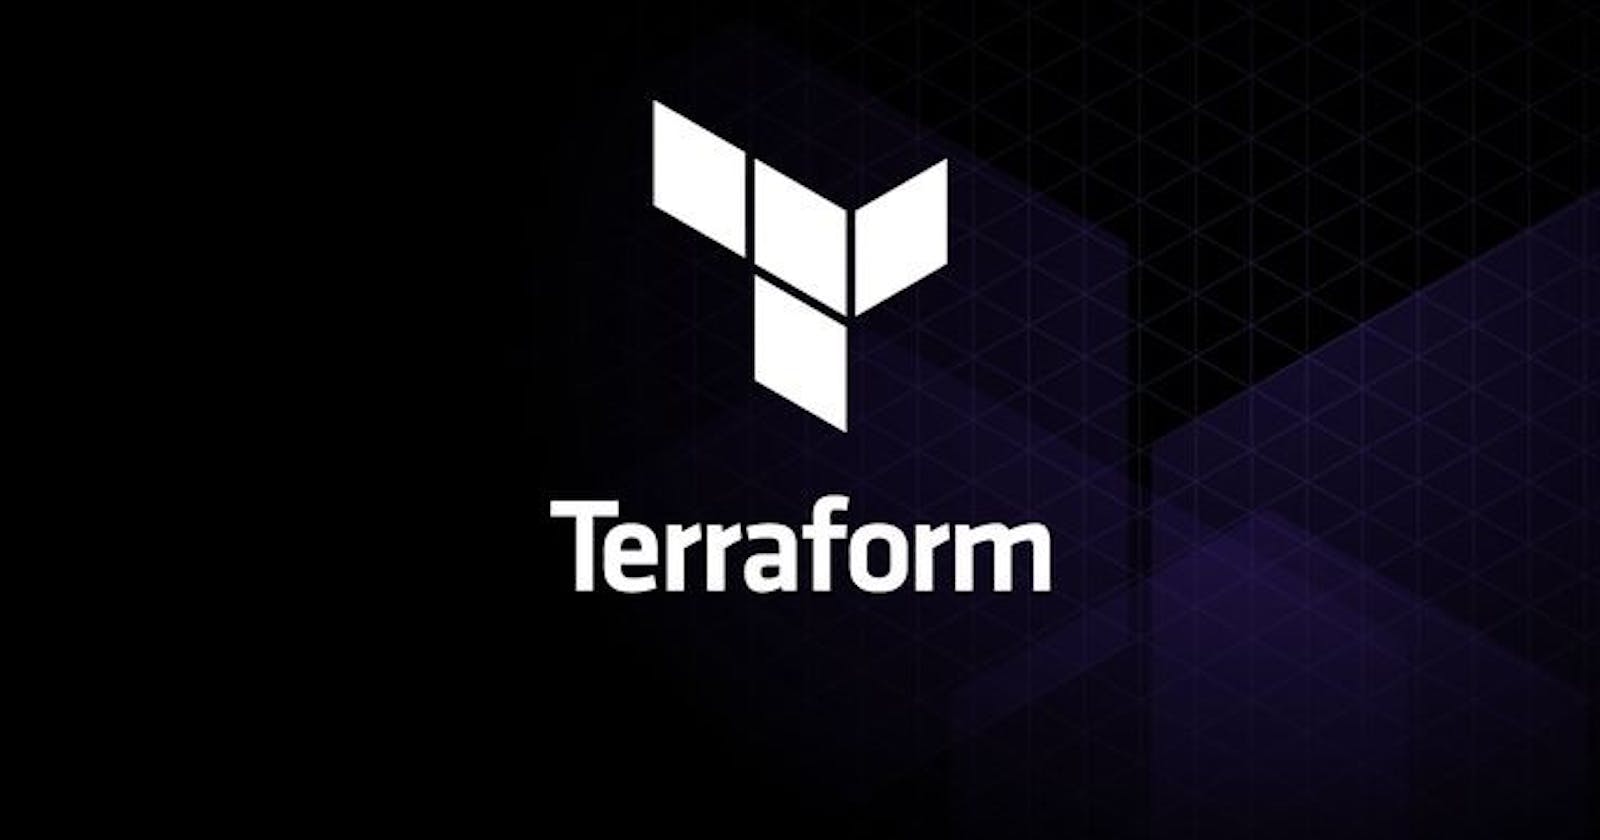 7 Terraform commands you should know